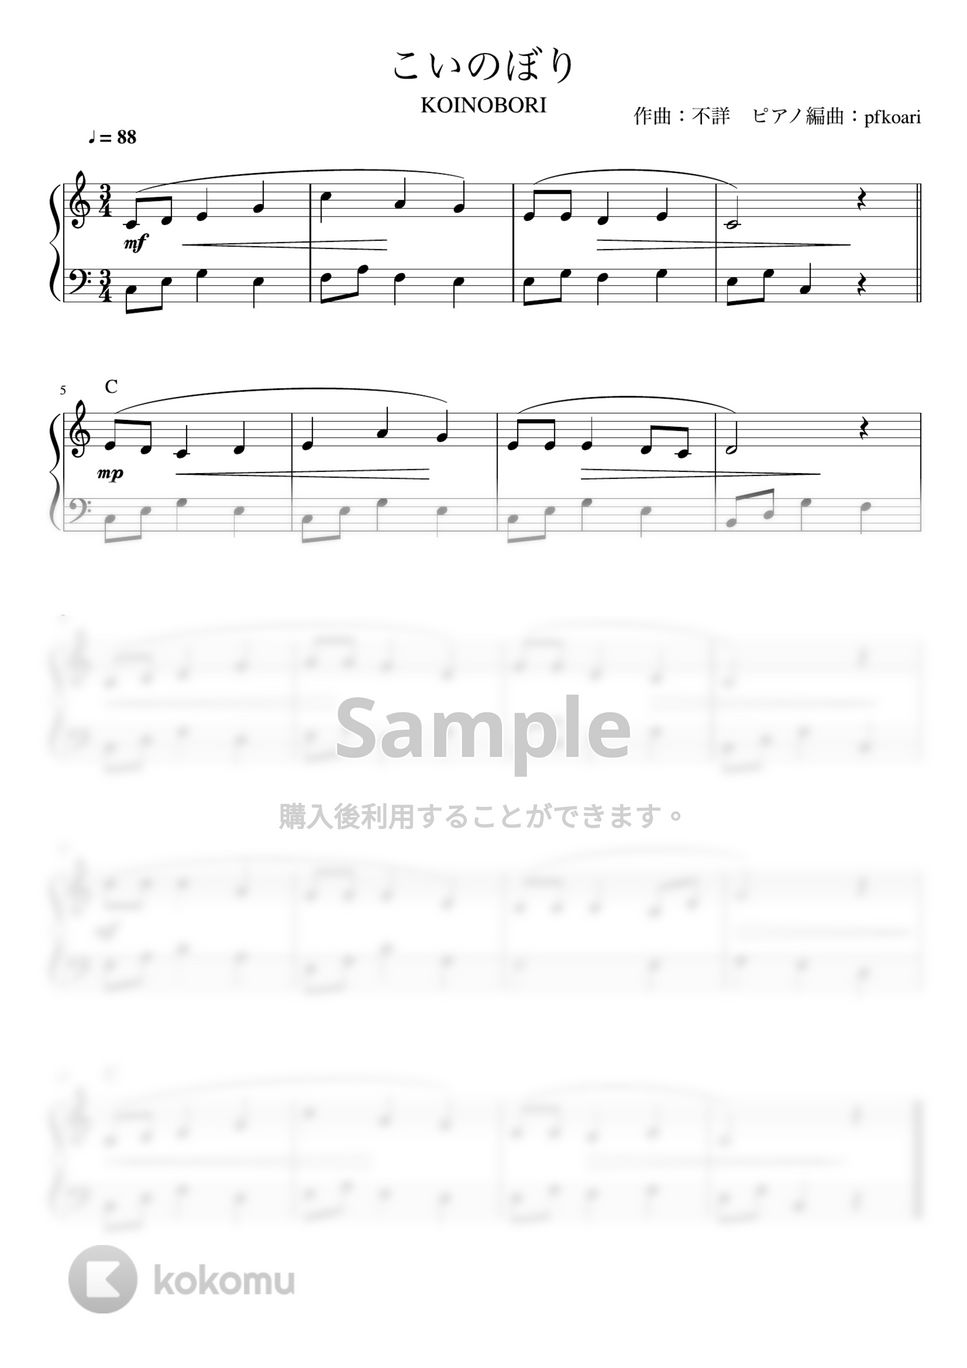 こいのぼり (Cdur/ピアノソロ初級) by pfkaori